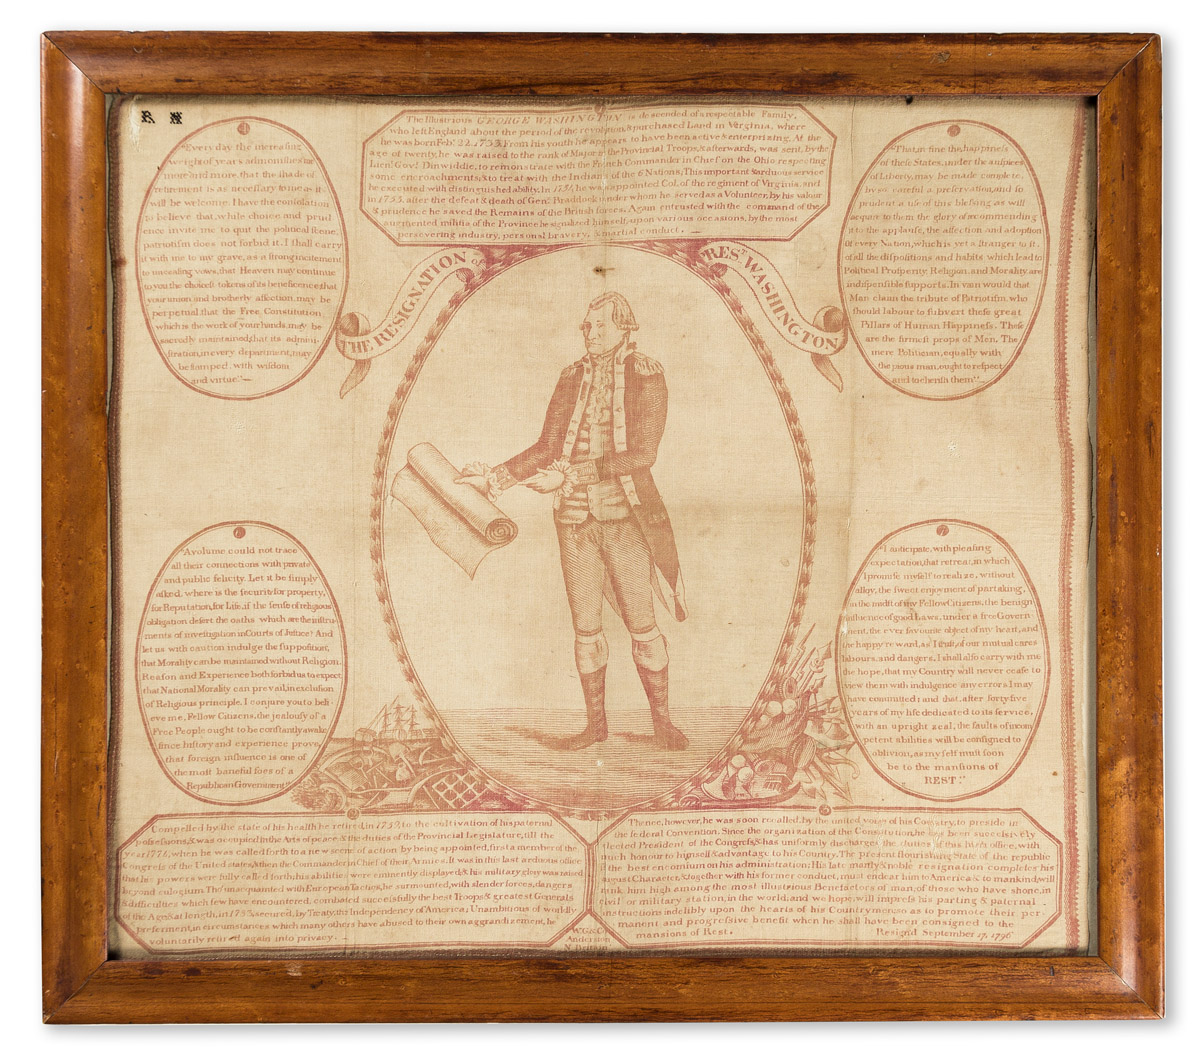 (GEORGE WASHINGTON.) Textile titled The Resignation of Prest Washington.